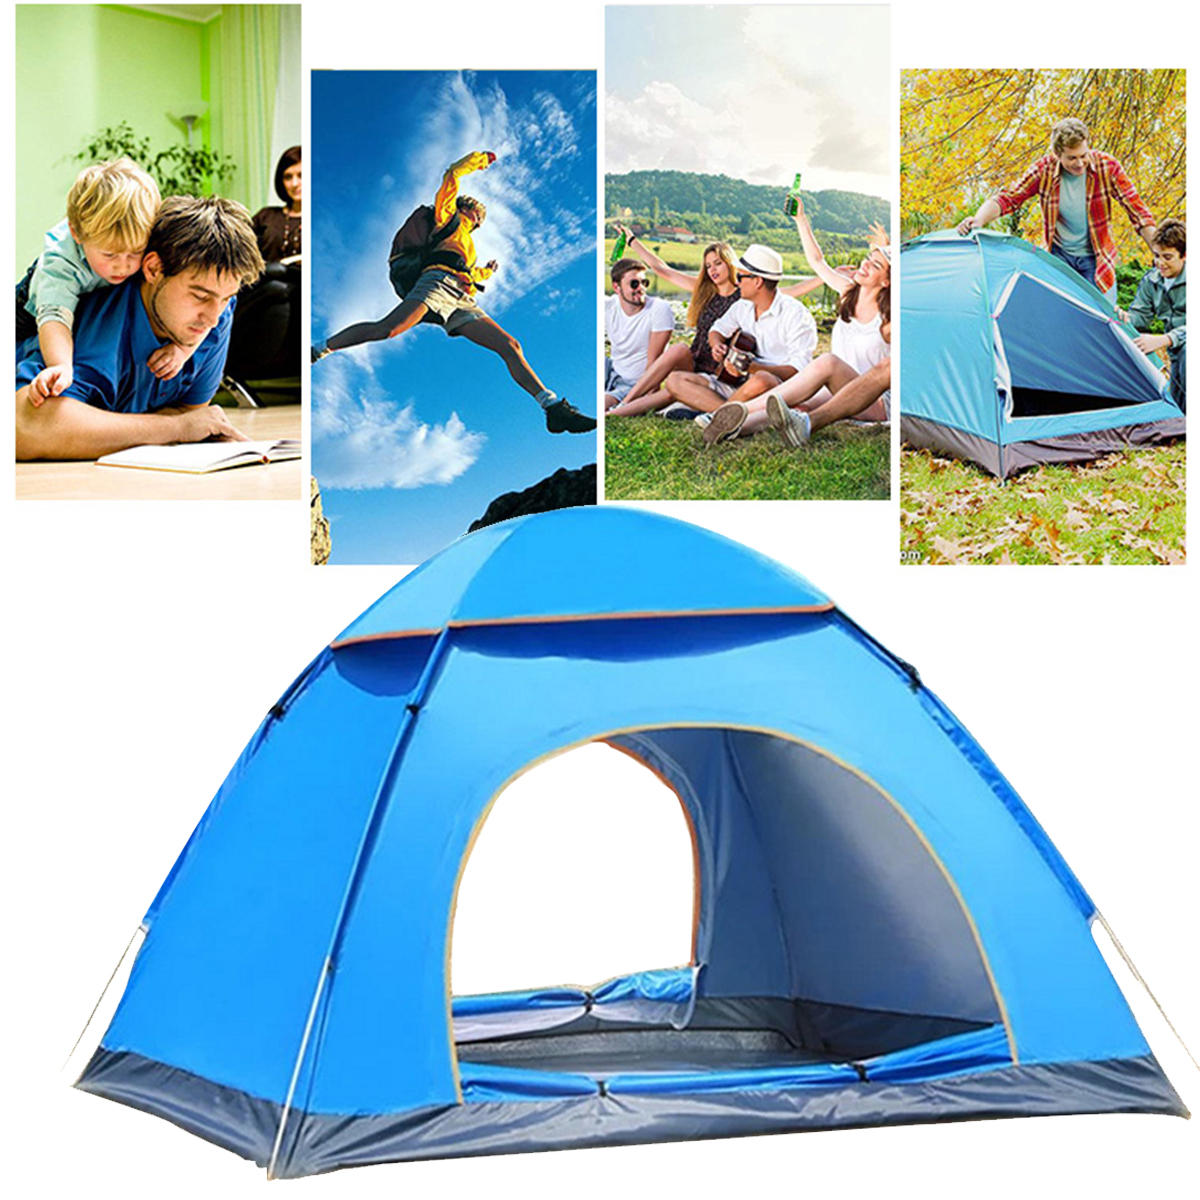 Outdoor Dome campingtent voor 3-4 personen met dubbele deur, waterdicht polyester, ideaal voor strand- en wandeltochten.